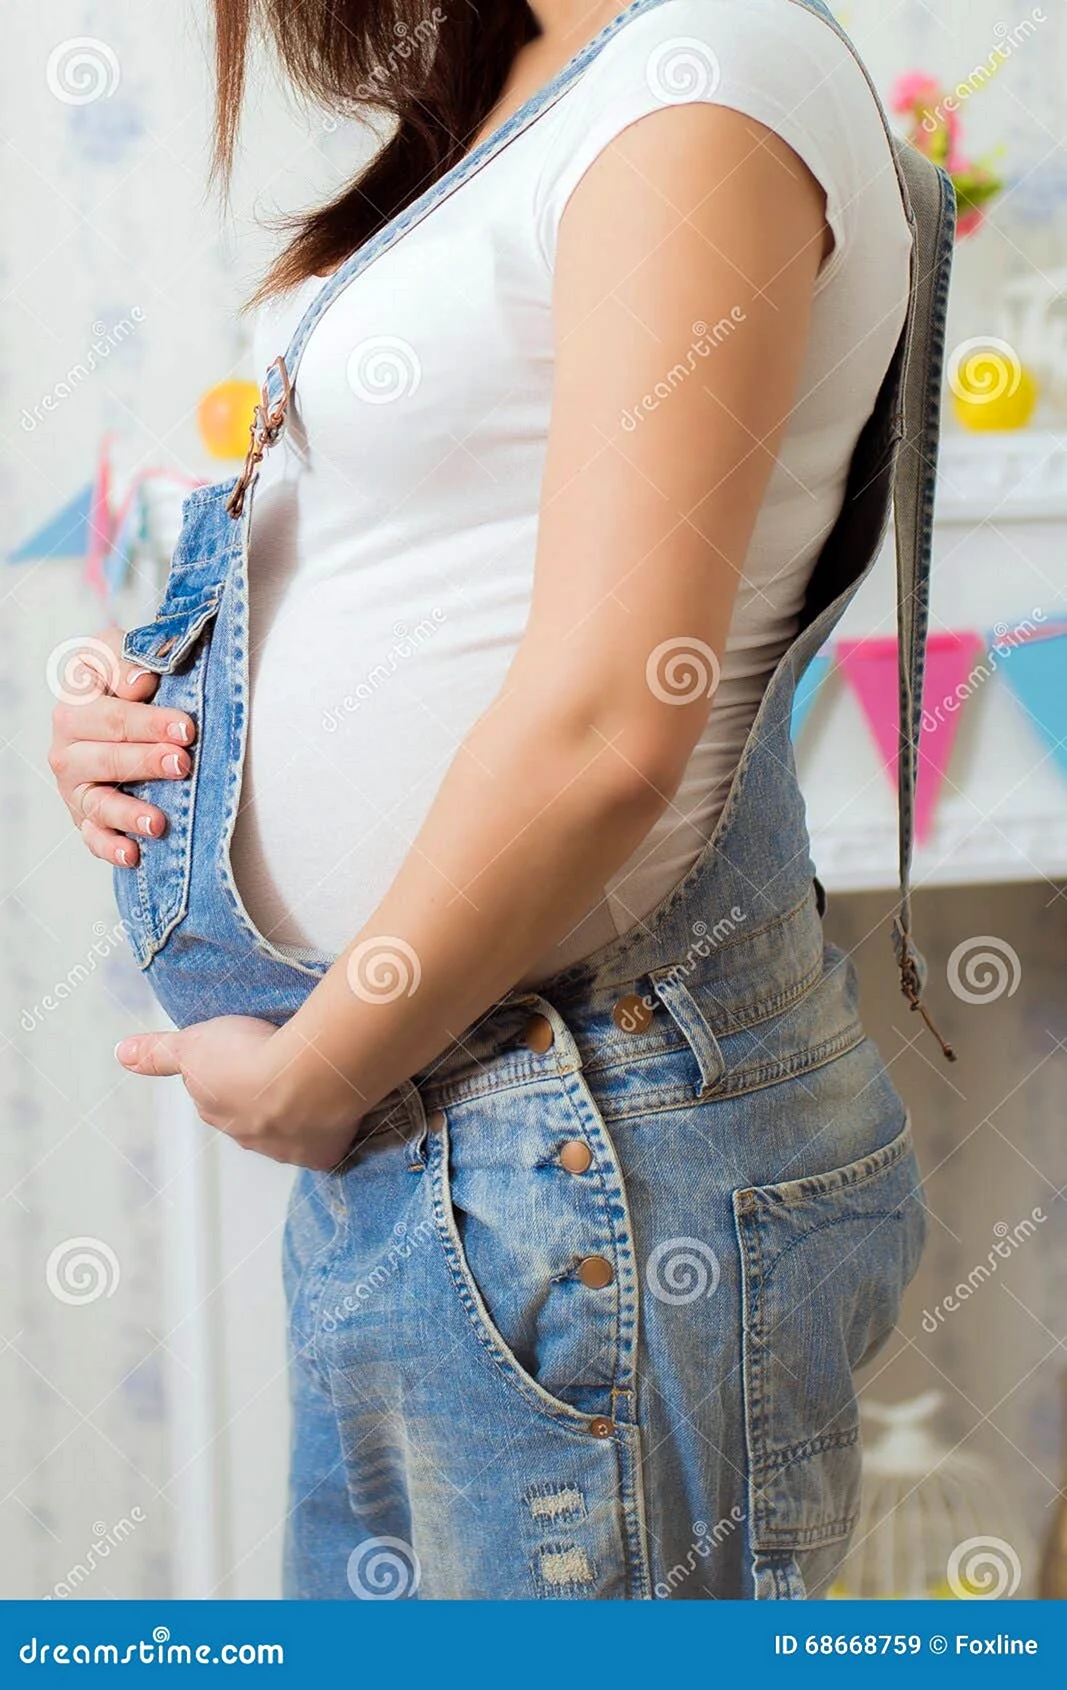 Фотосессия беременной в джинсовом комбинезоне